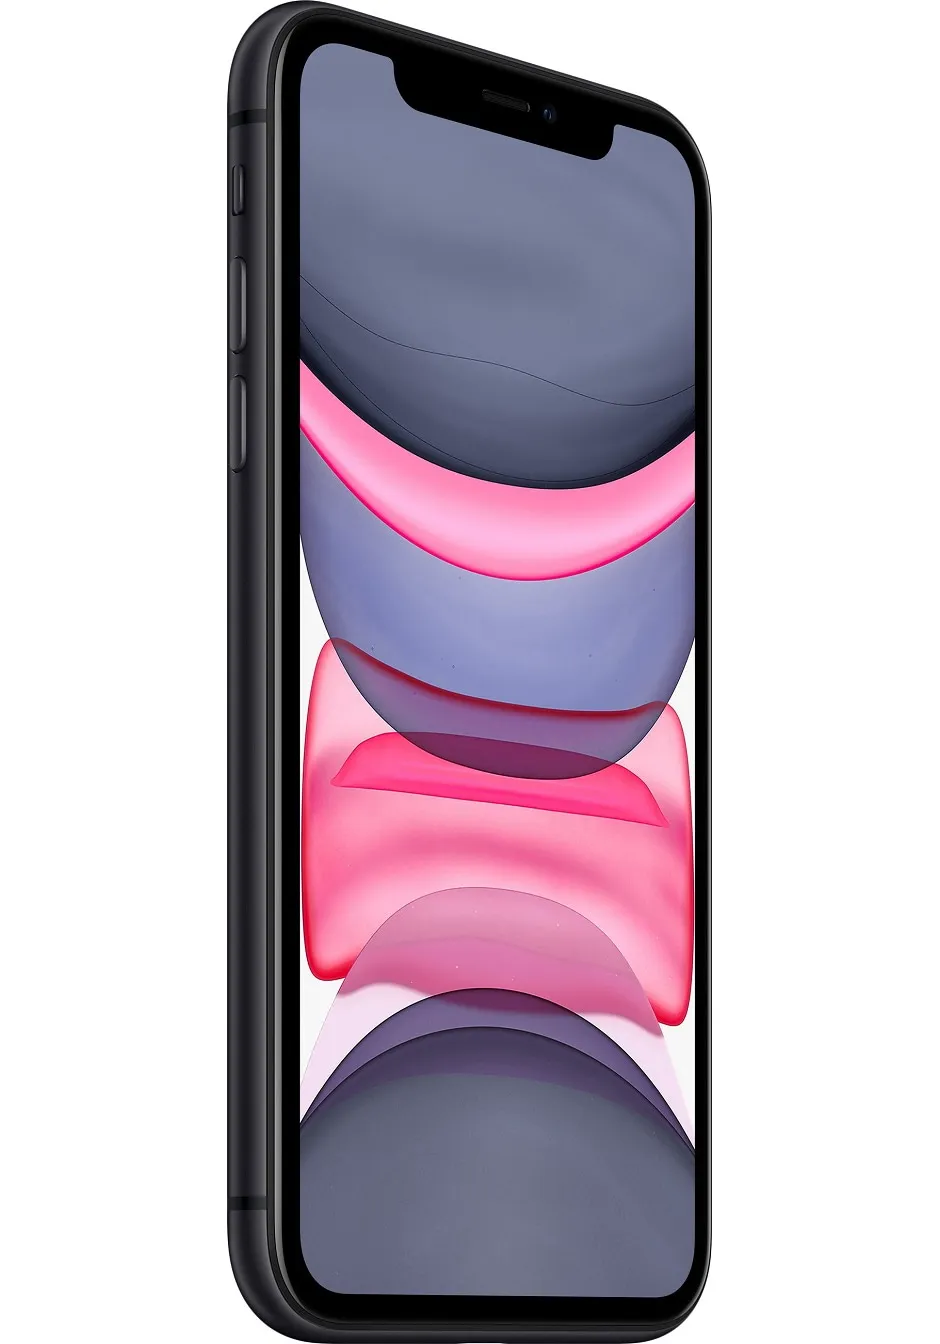 Смартфон Apple iPhone 11 64 ГБ черный - цена, купить на nout.kz